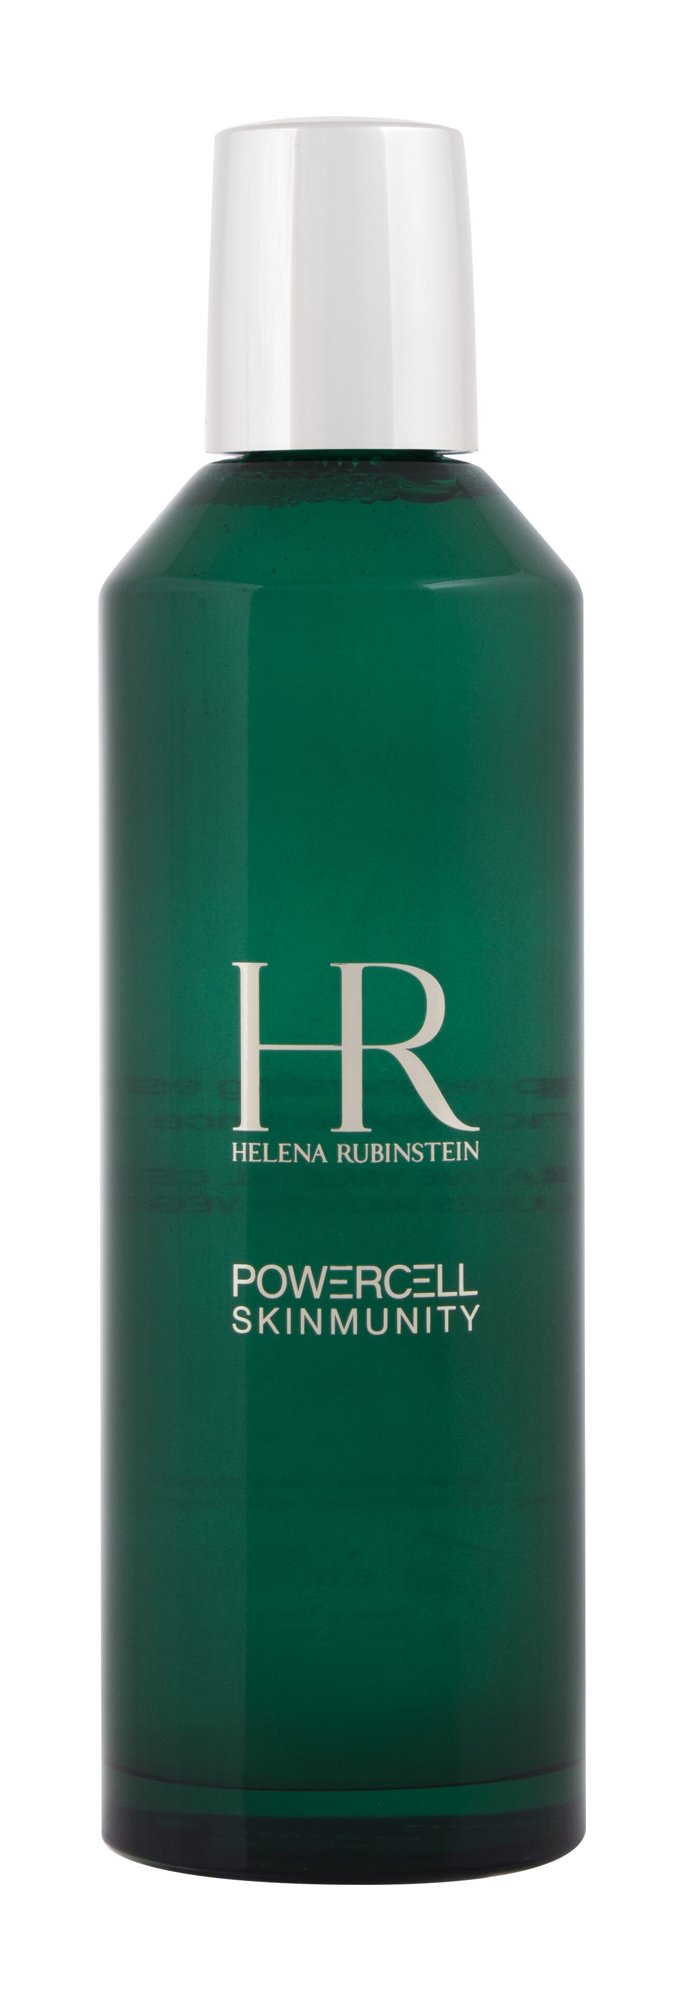 Helena Rubinstein Powercell Skinmunity Essence 200ml Veido serumas